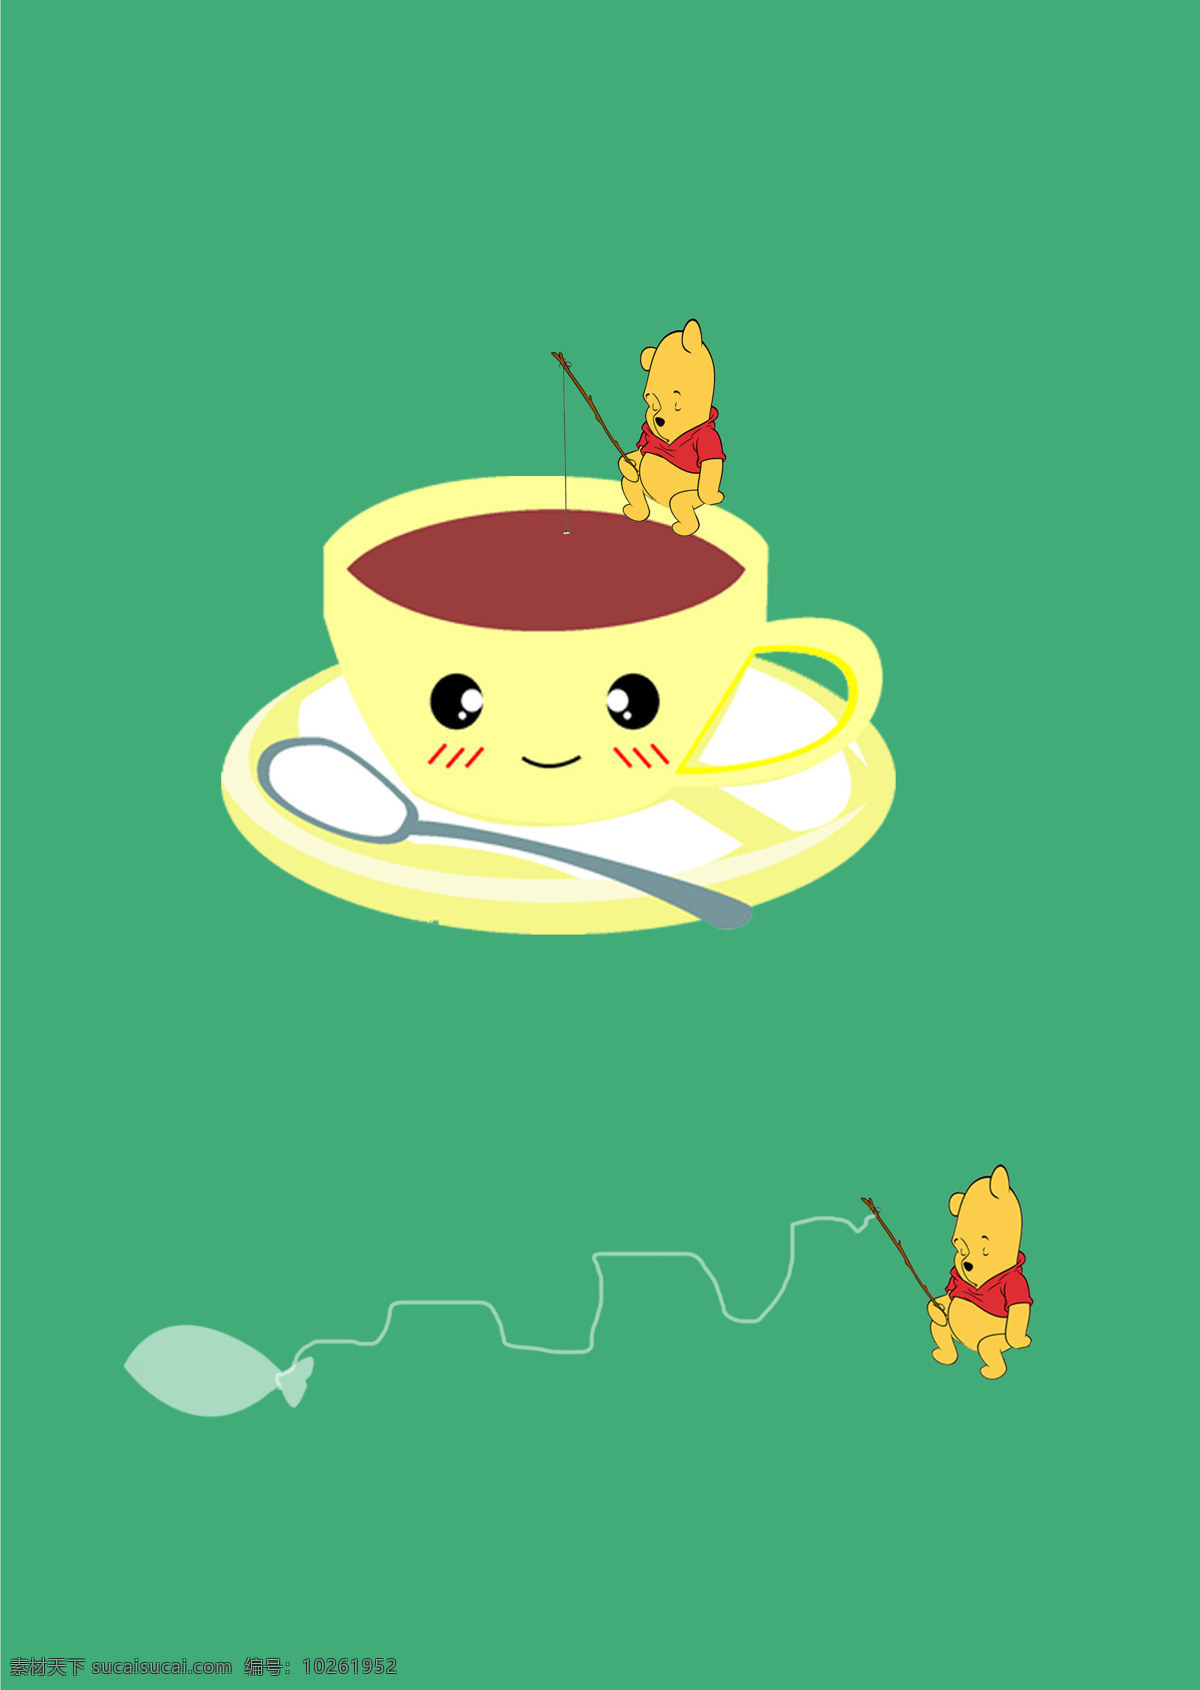 钓鱼 动漫动画 咖啡杯 可爱 小熊 创意 茶叶 设计素材 模板下载 创意茶叶 创意茶叶包